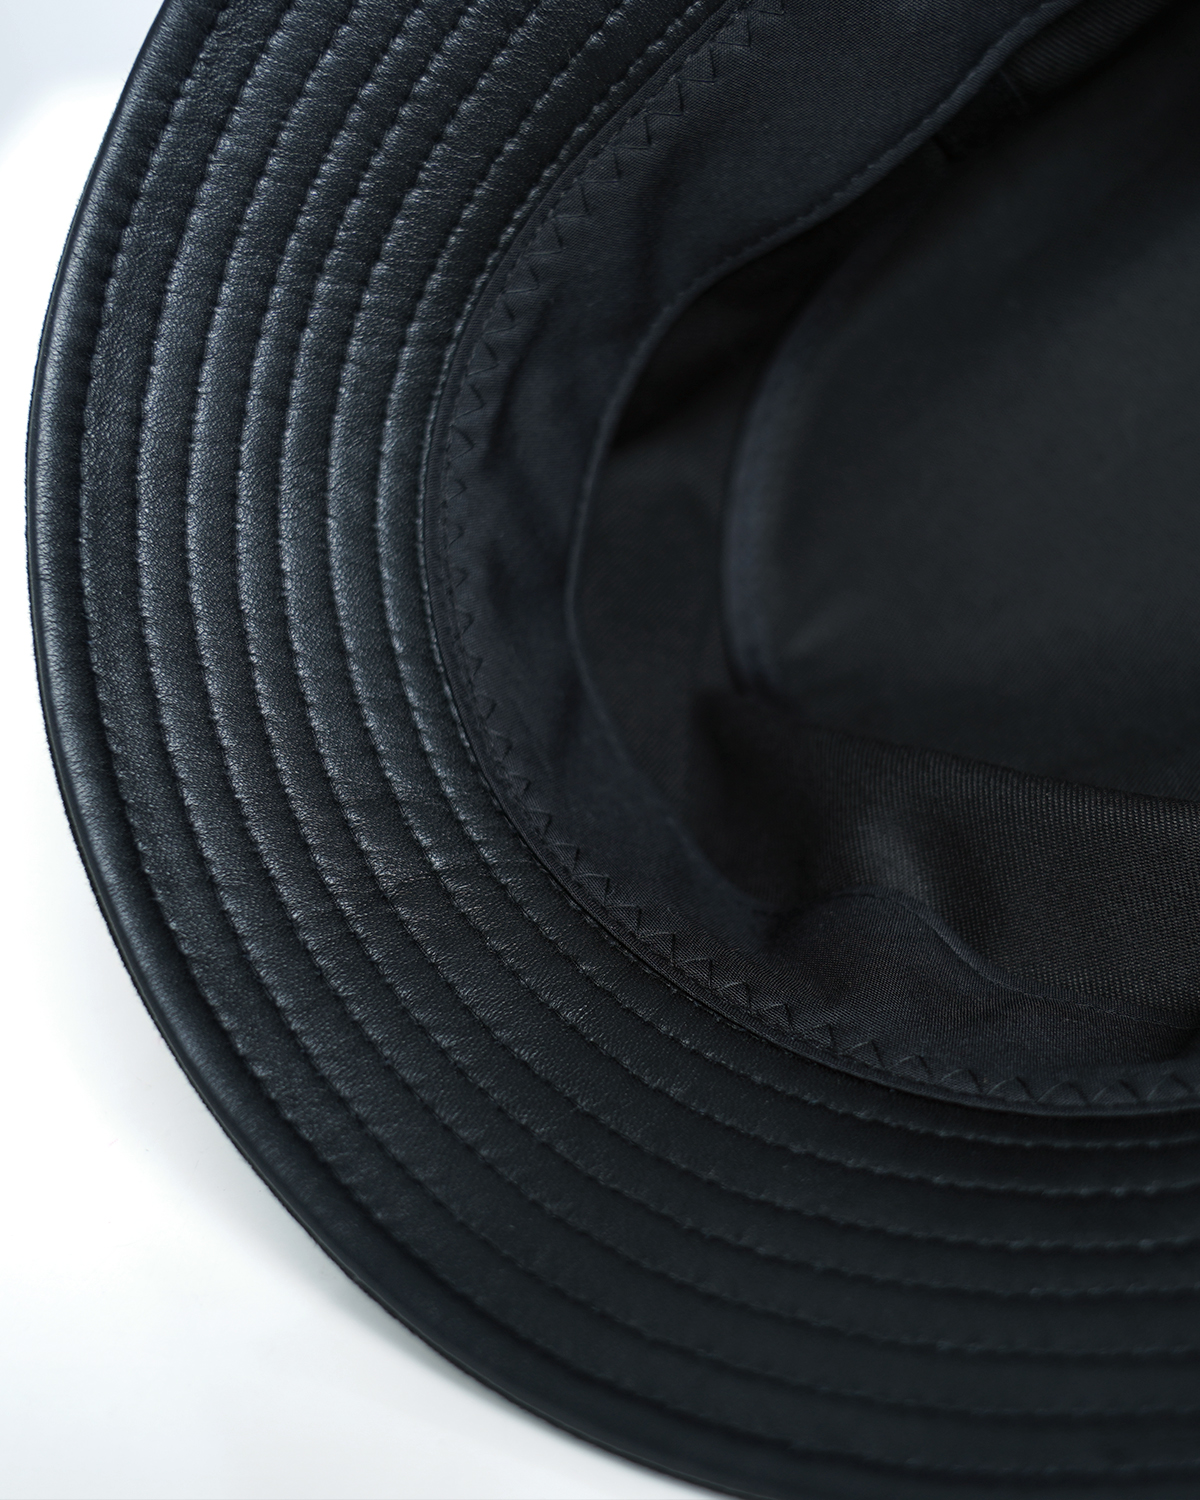 COTTON MOUNT HAT 2.0 詳細画像 Black x Silver 6